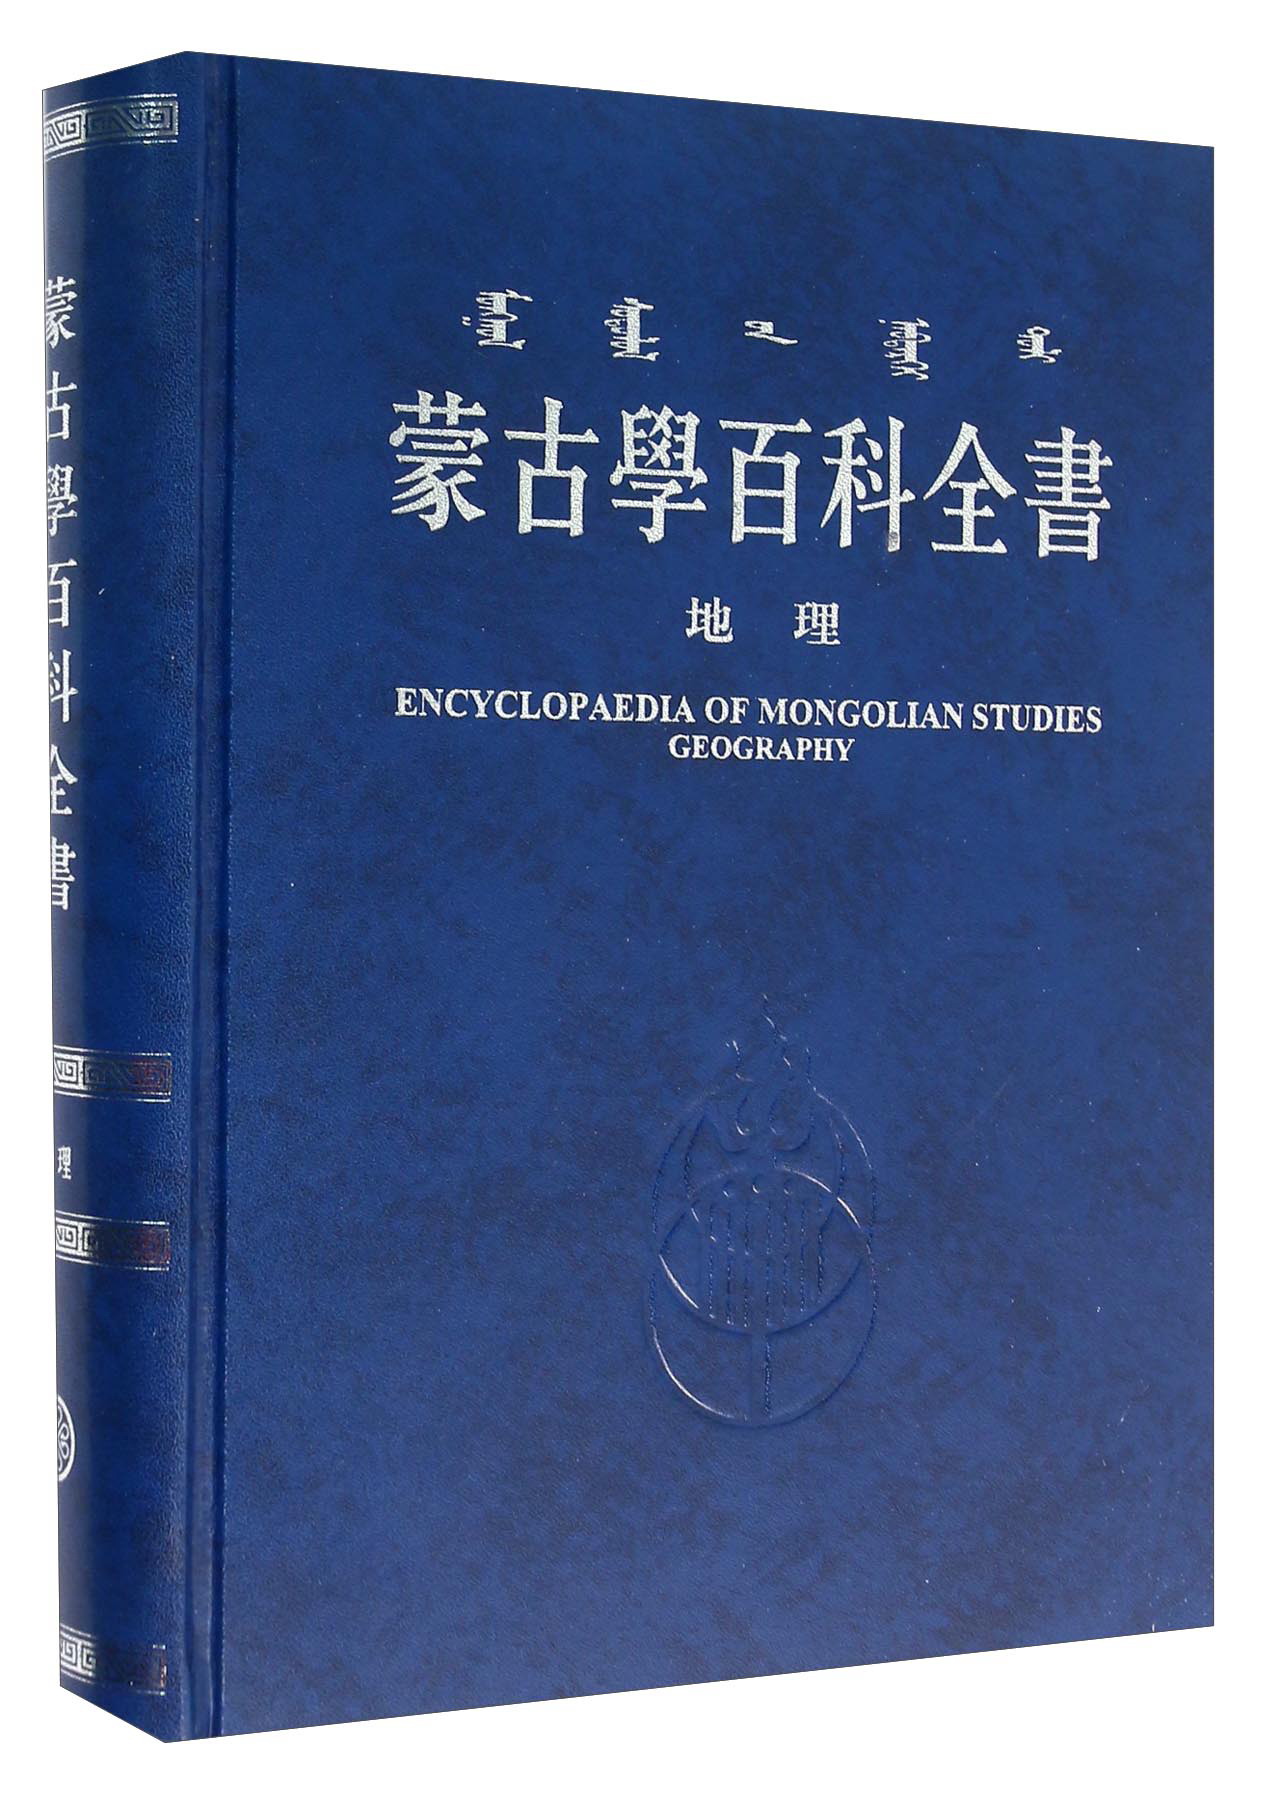 蒙古学百科全书 地理